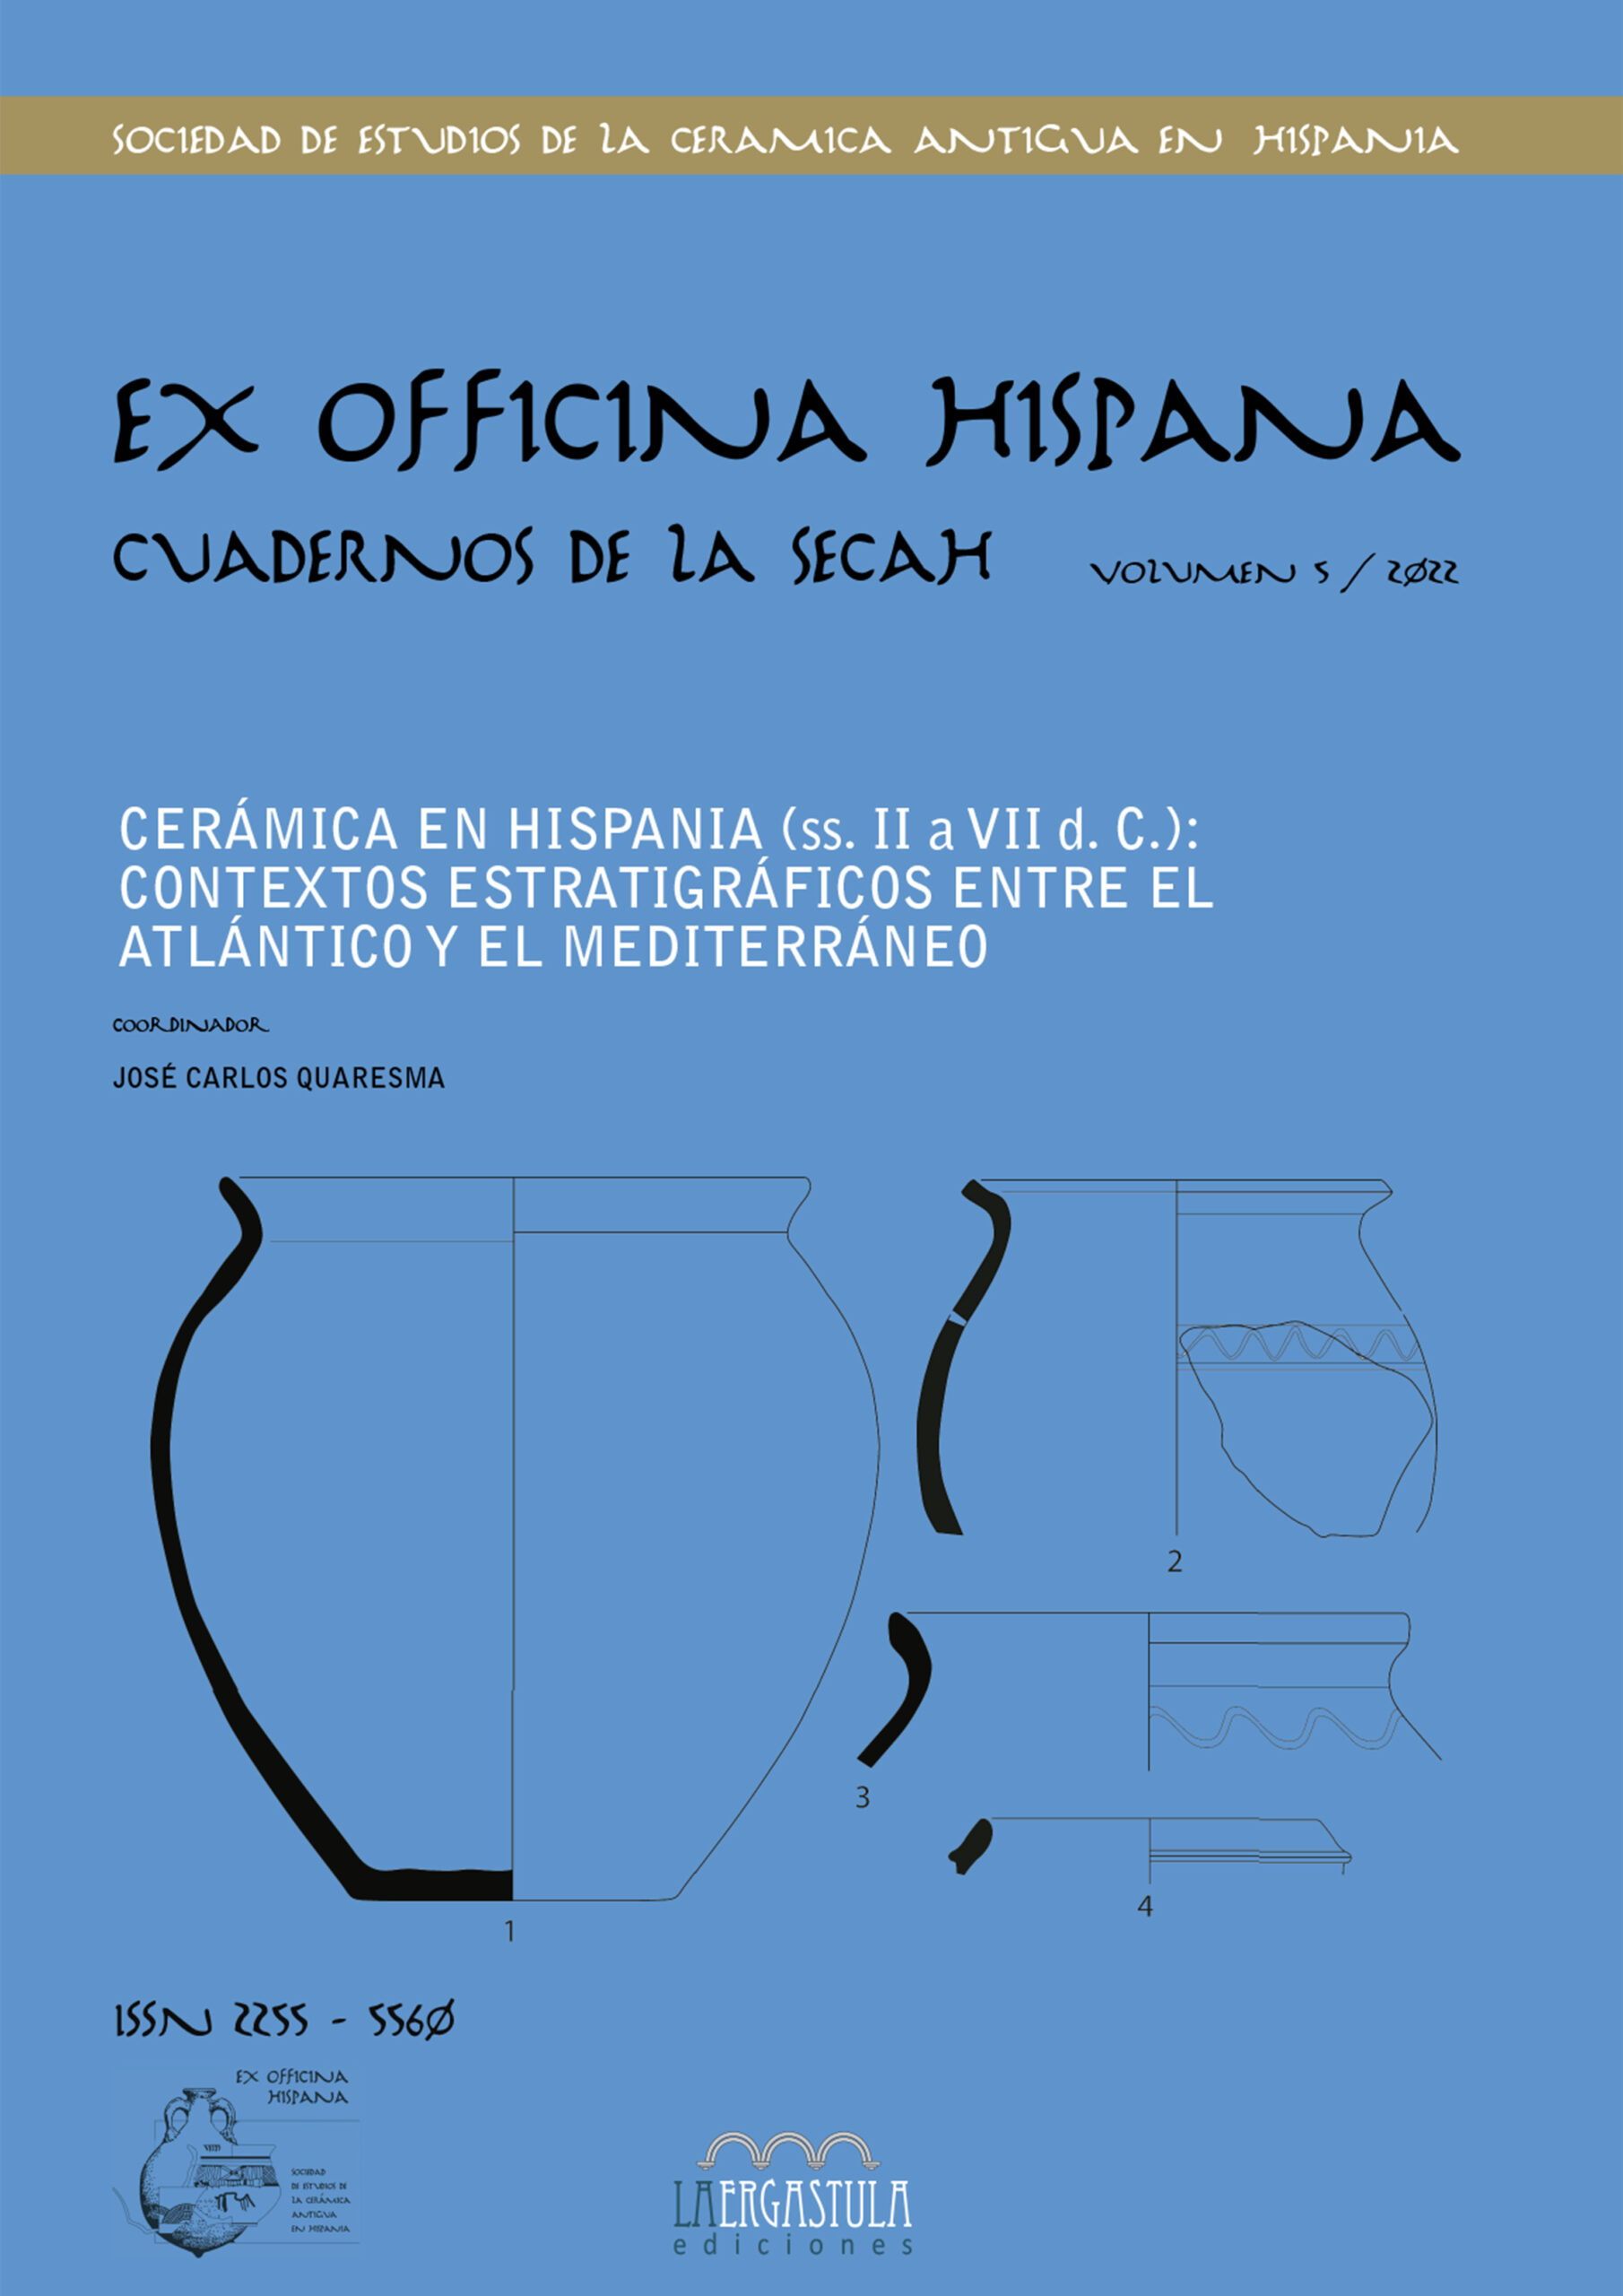 Cerámica en Hispania (ss. II a VII d.c): contextos estratigráficos entre el Atlántico y el Mediterráneo